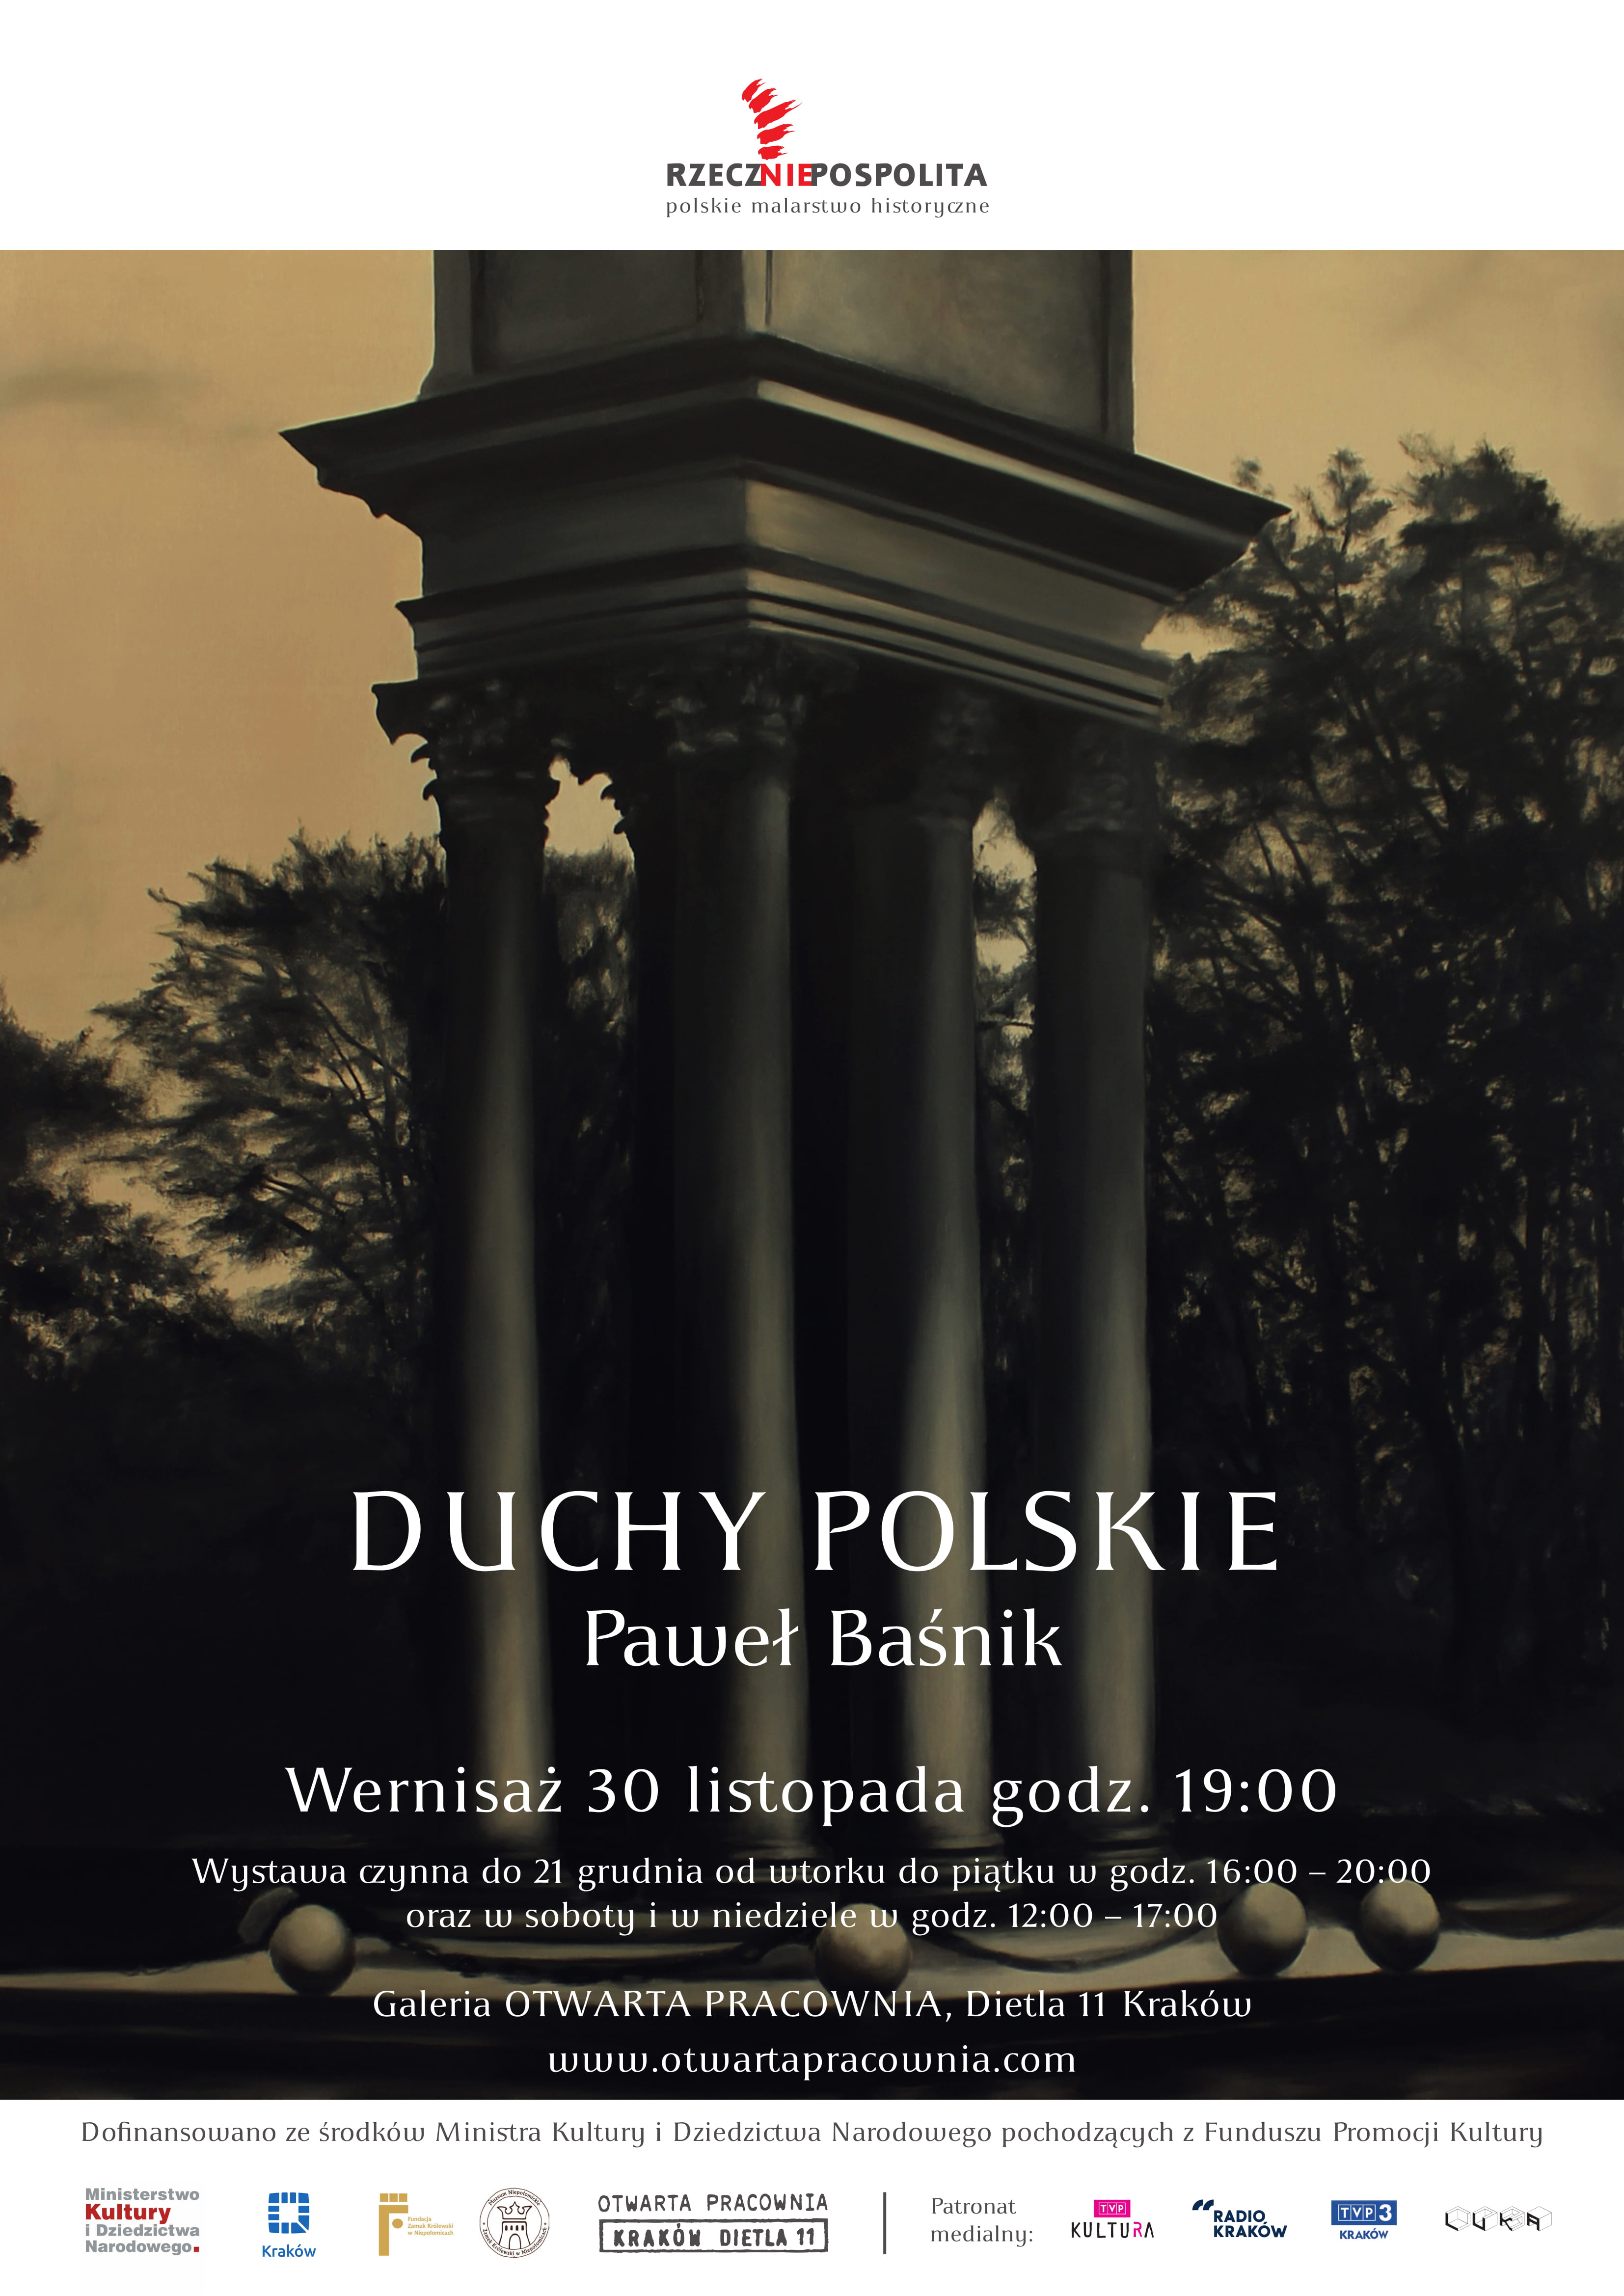 „Duchy polskie” Paweł Baśnik (źródło: materiały prasowe organizatora)